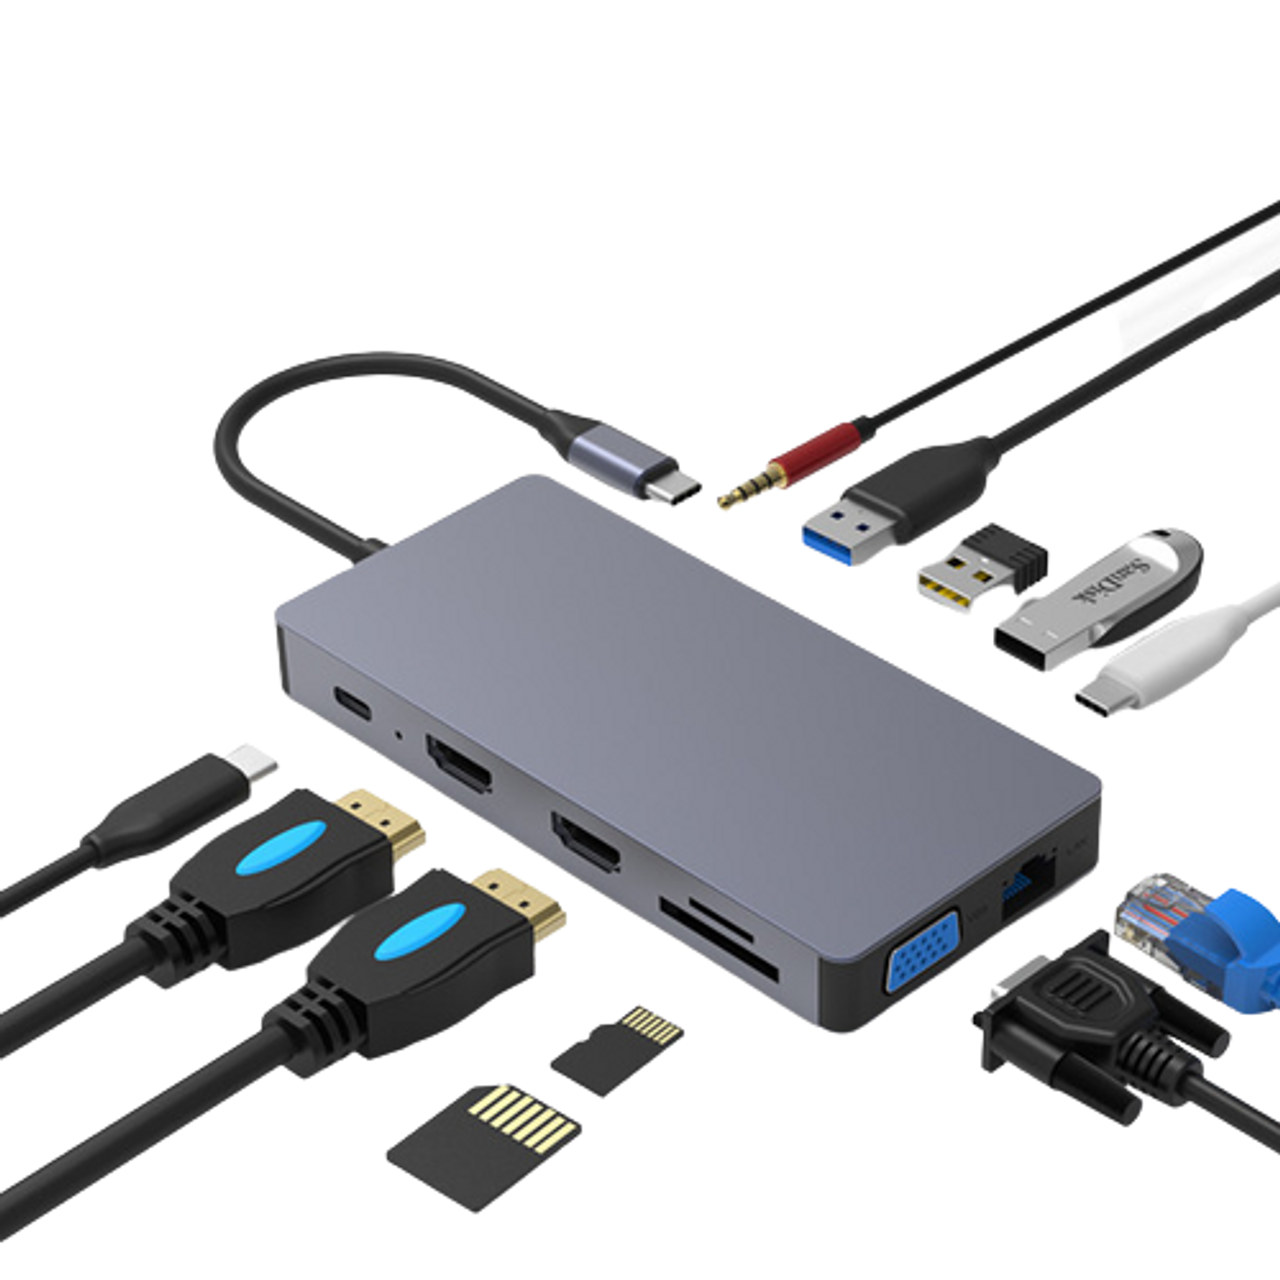 Philips Adaptador USB-C a HDTV Multifunción USB-C TO HDMI/USB/PD 3